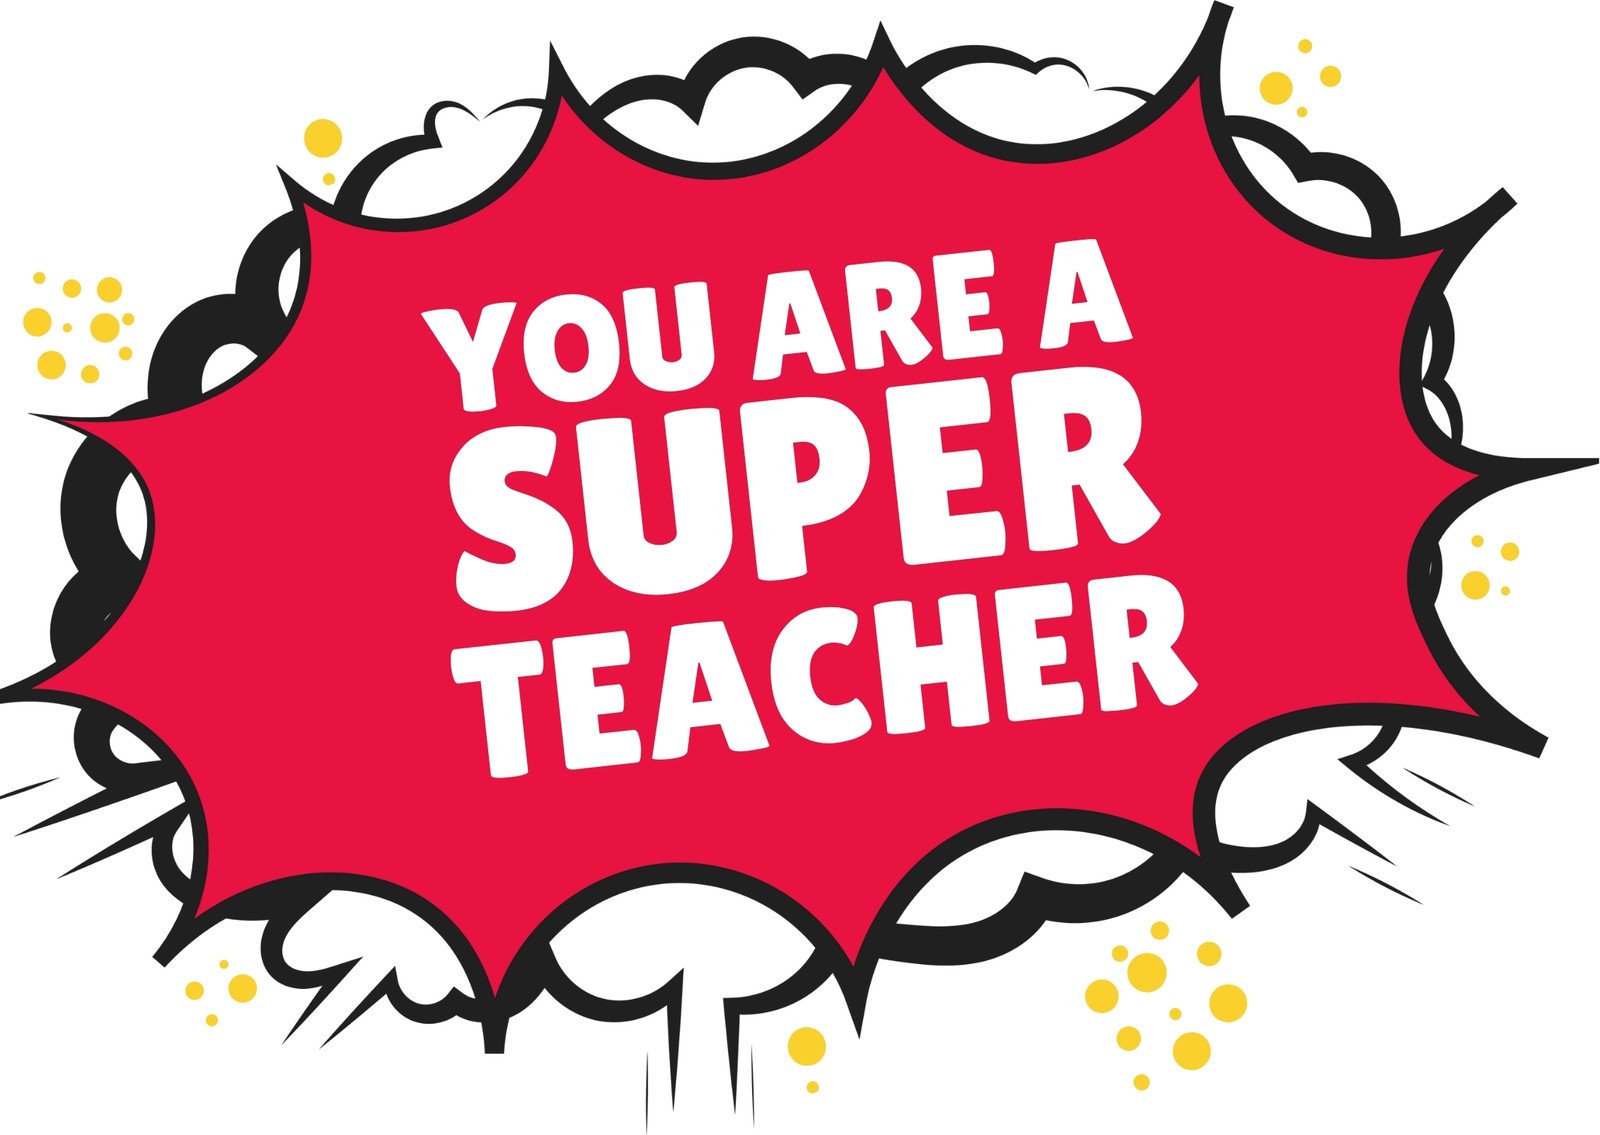 super teacher clipart